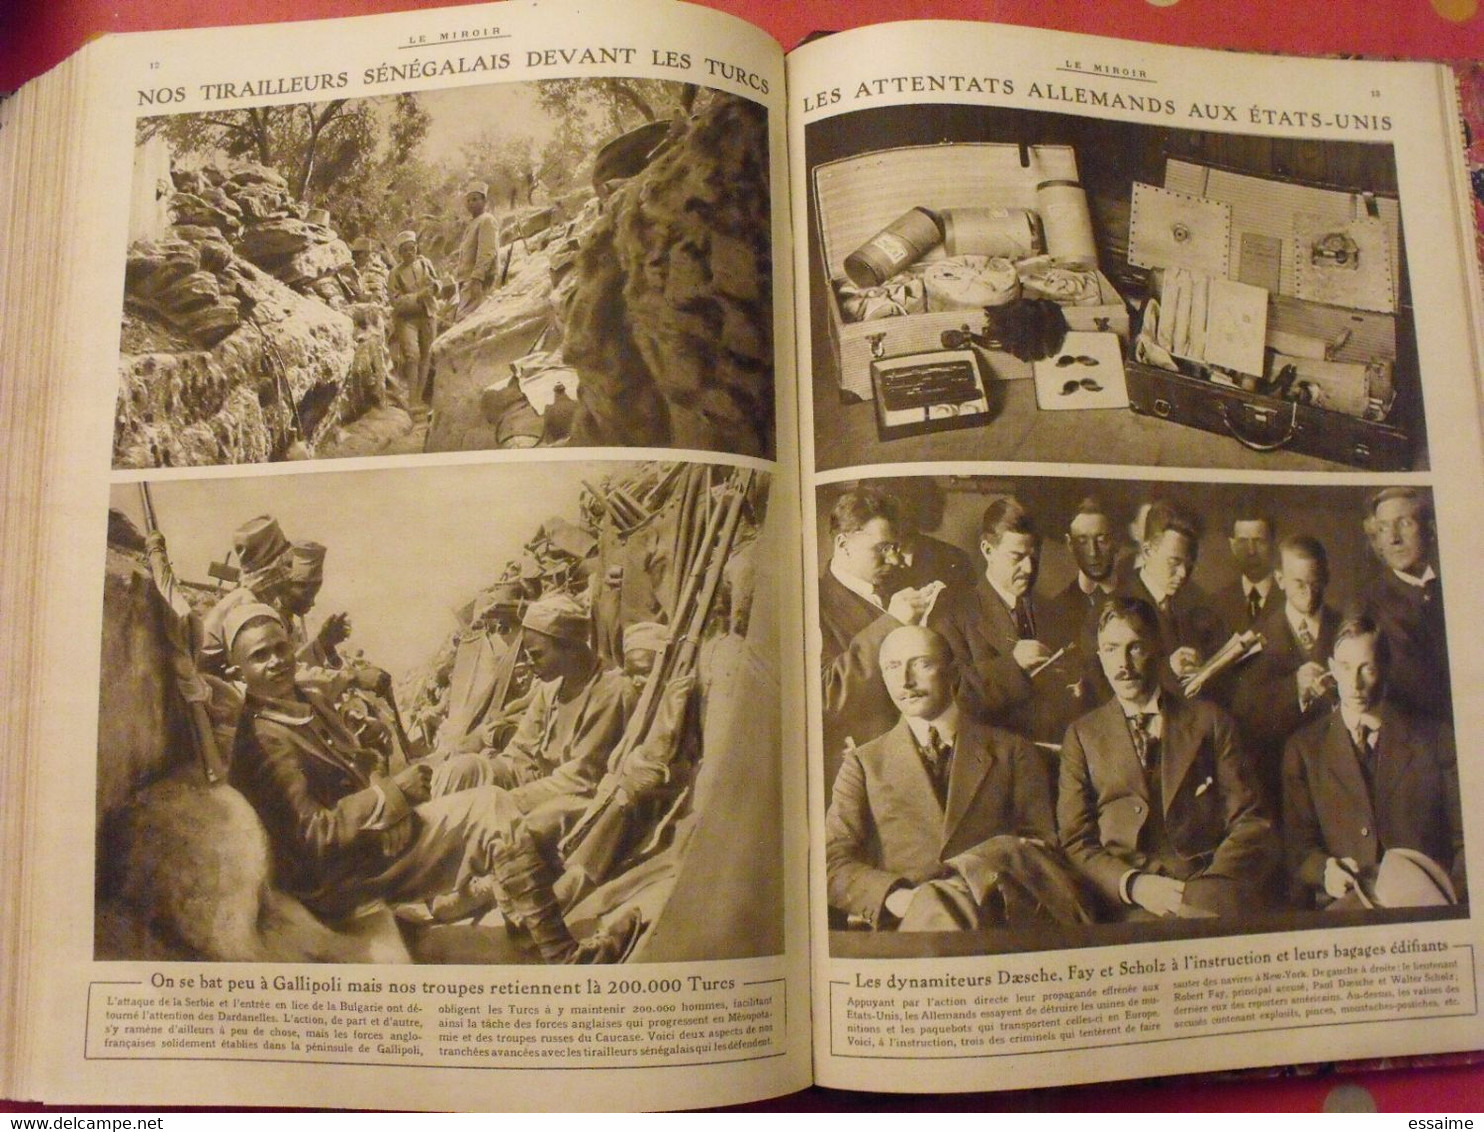 Le miroir recueil reliure 1915 (année complète 52 n°). guerre 14-18 très illustrée, documentée. zeppelin avion soldats